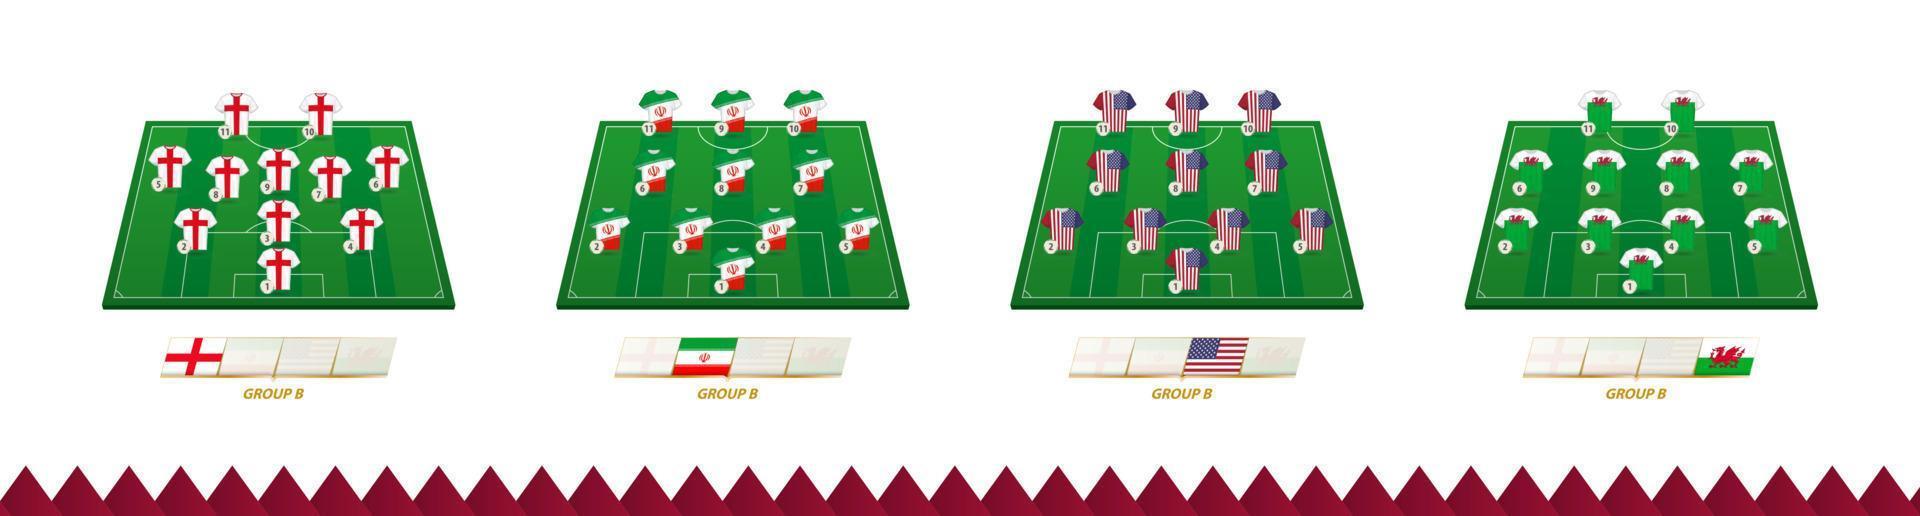 campo de fútbol con alineación de equipo para el grupo b de competición de fútbol. vector